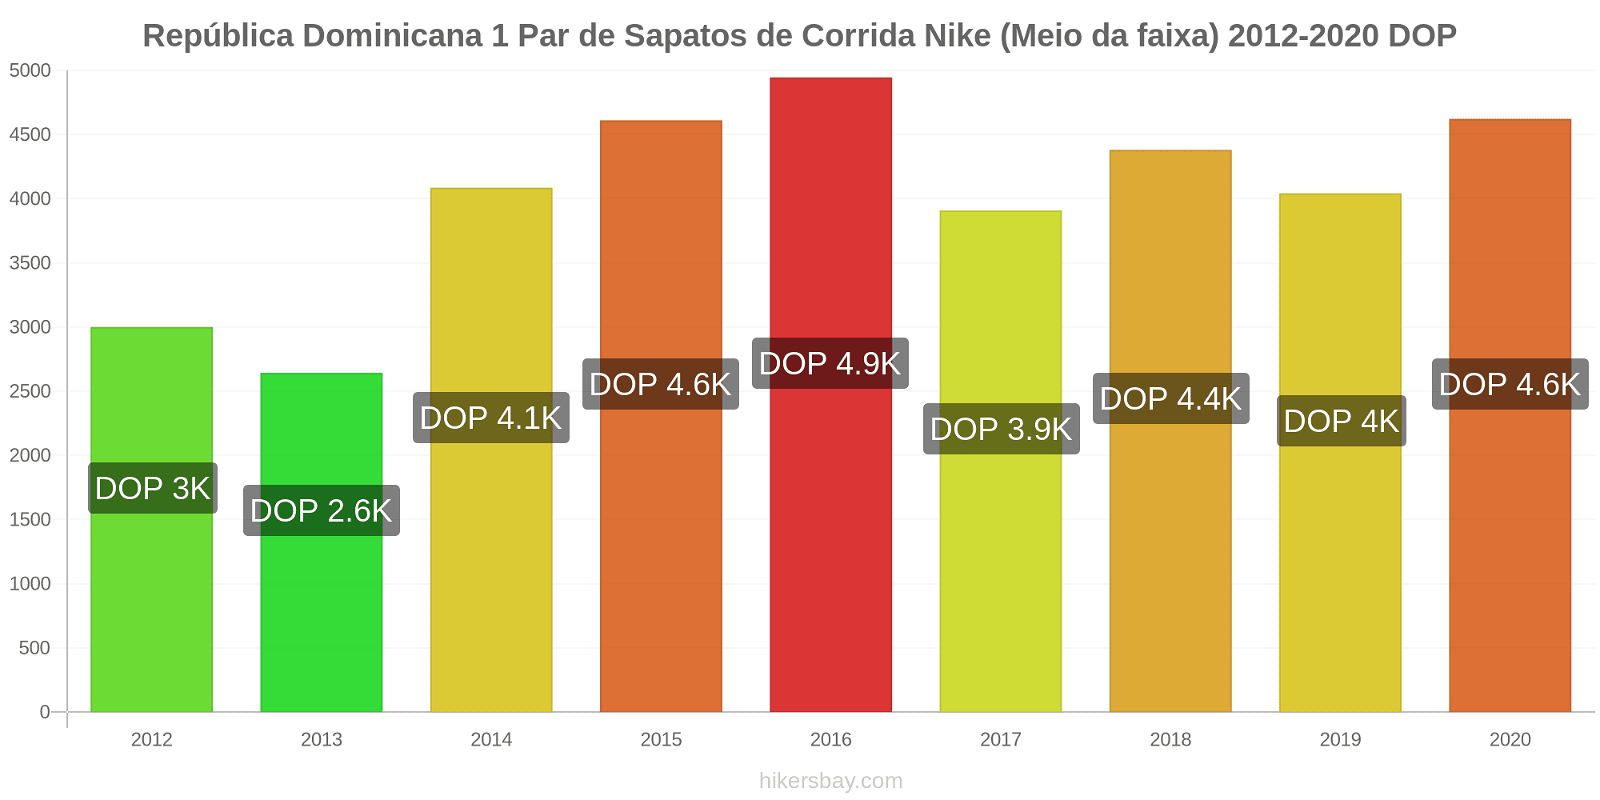 República Dominicana variação de preço 1 par de tênis Nike (mid-range) hikersbay.com